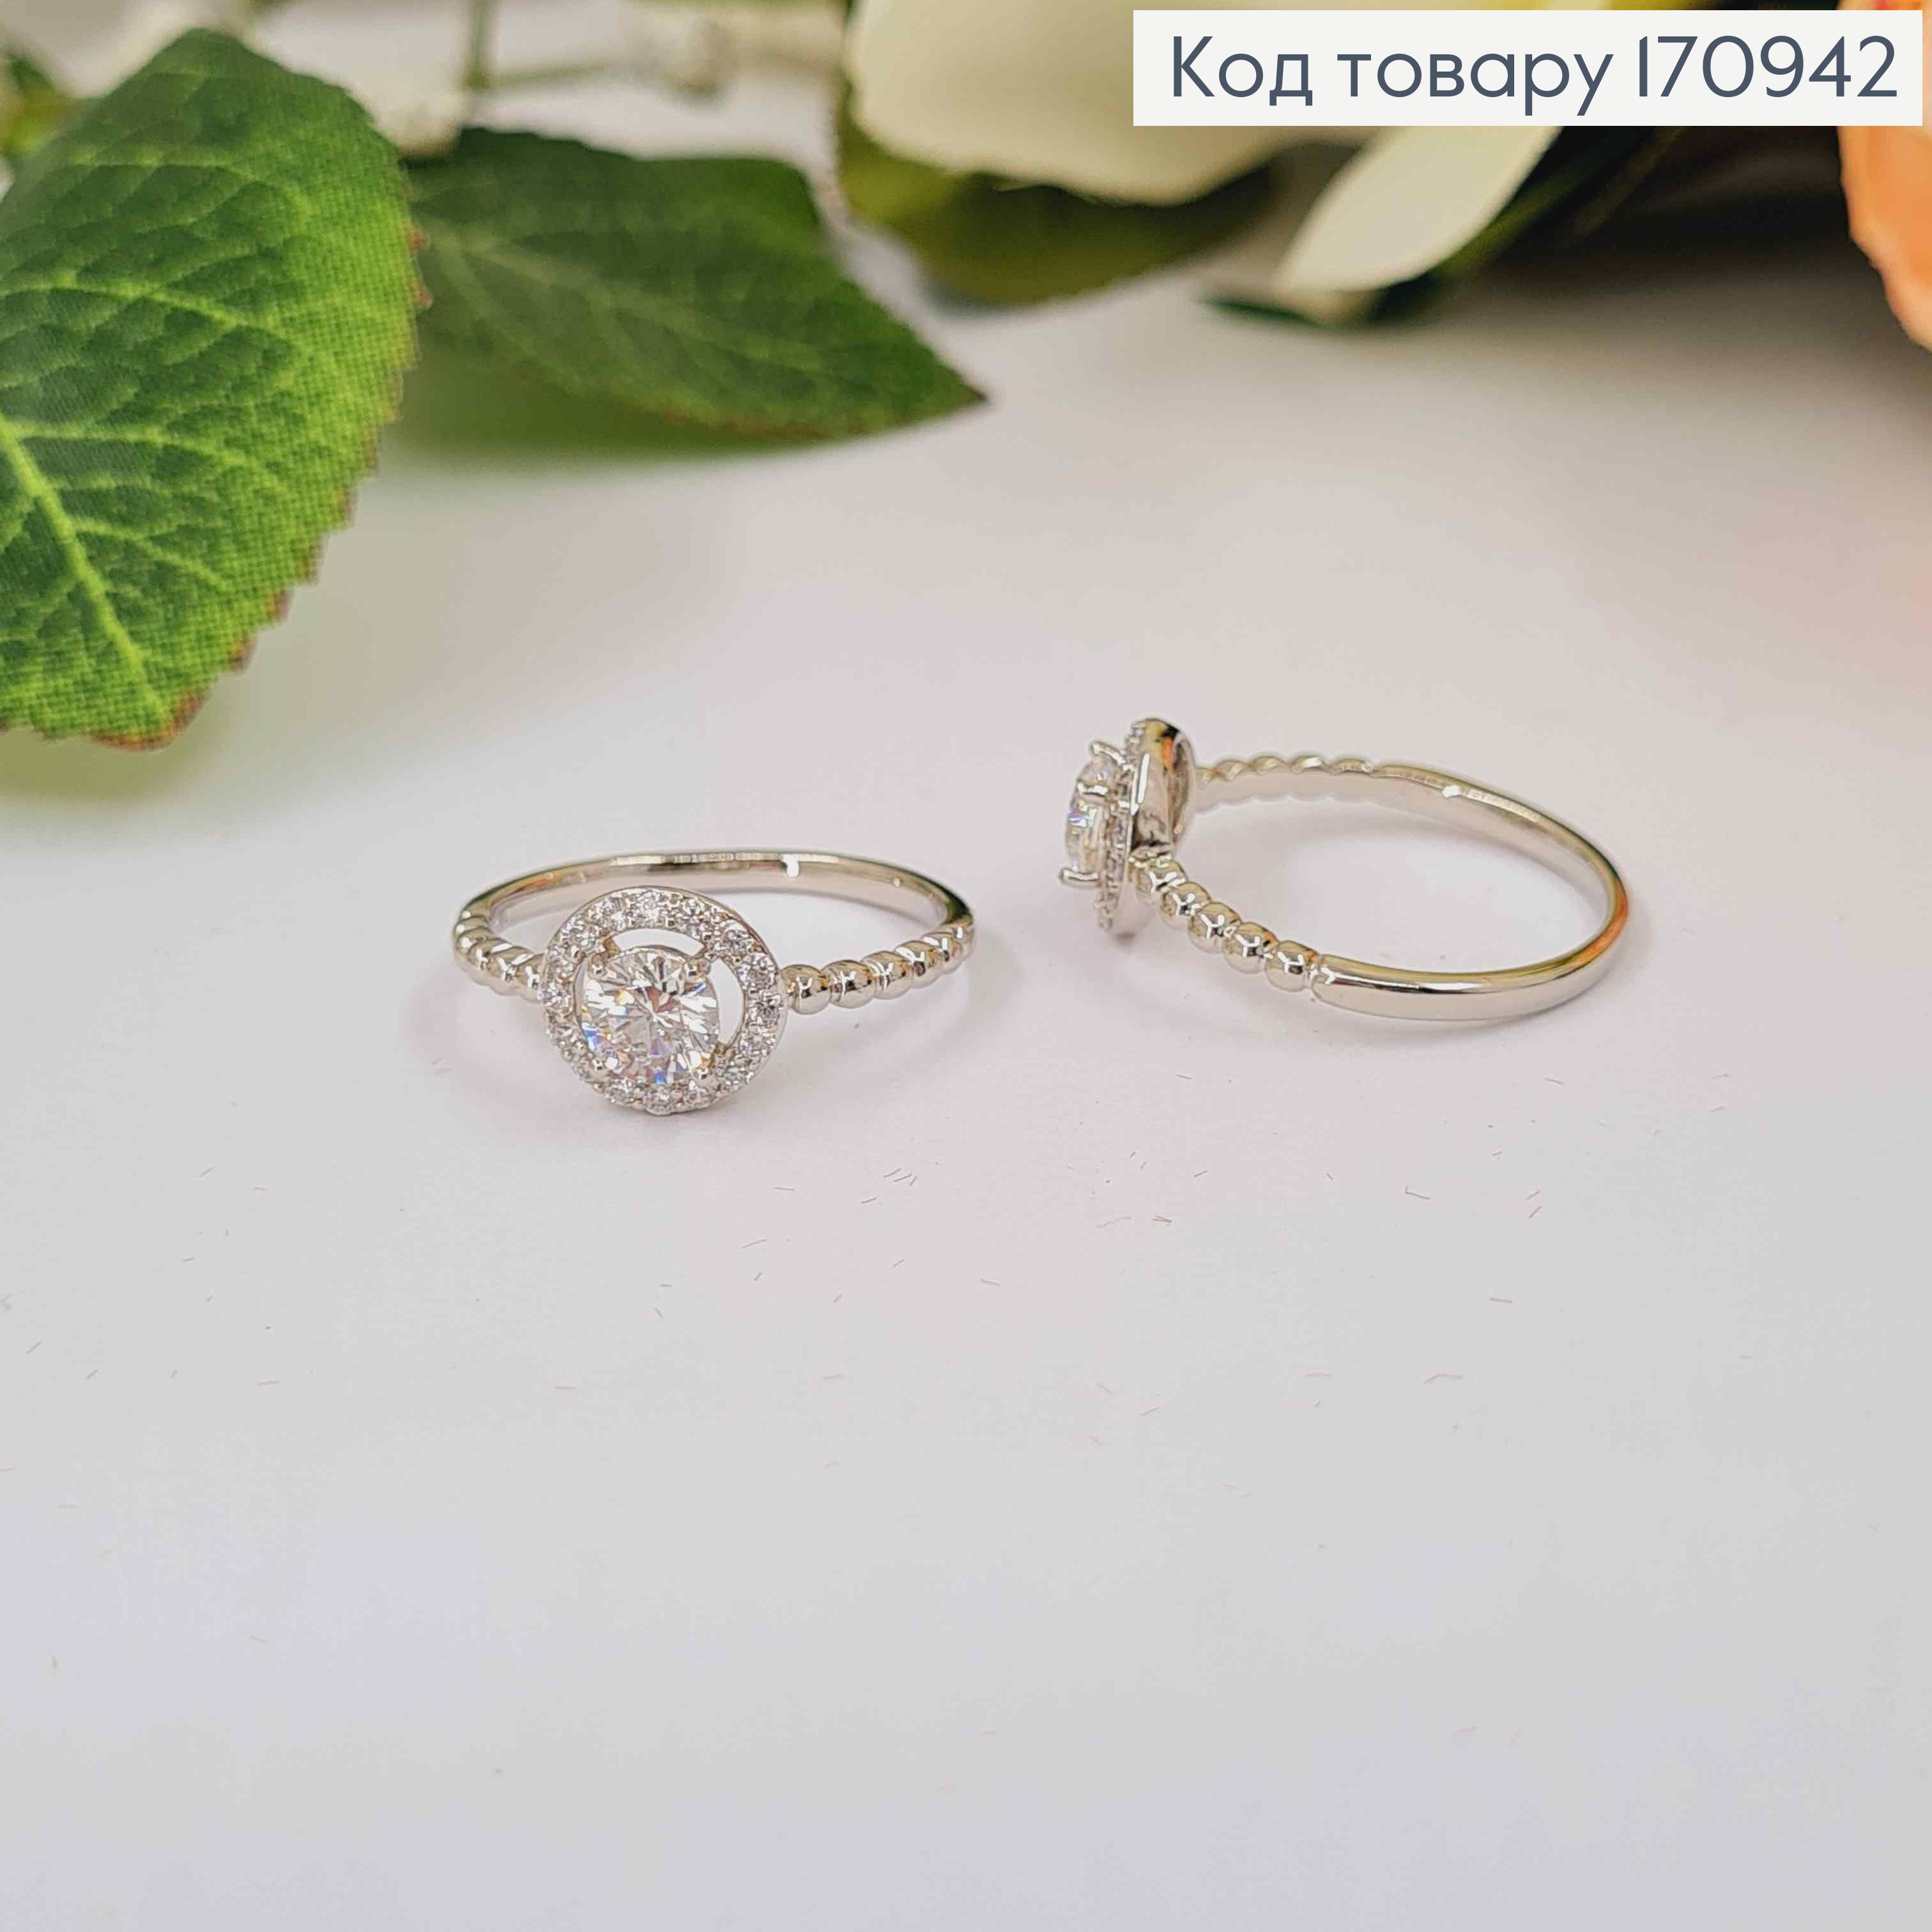 Перстень родований, з круглим камінцем в оправі, Xuping 18K 170942 фото 2